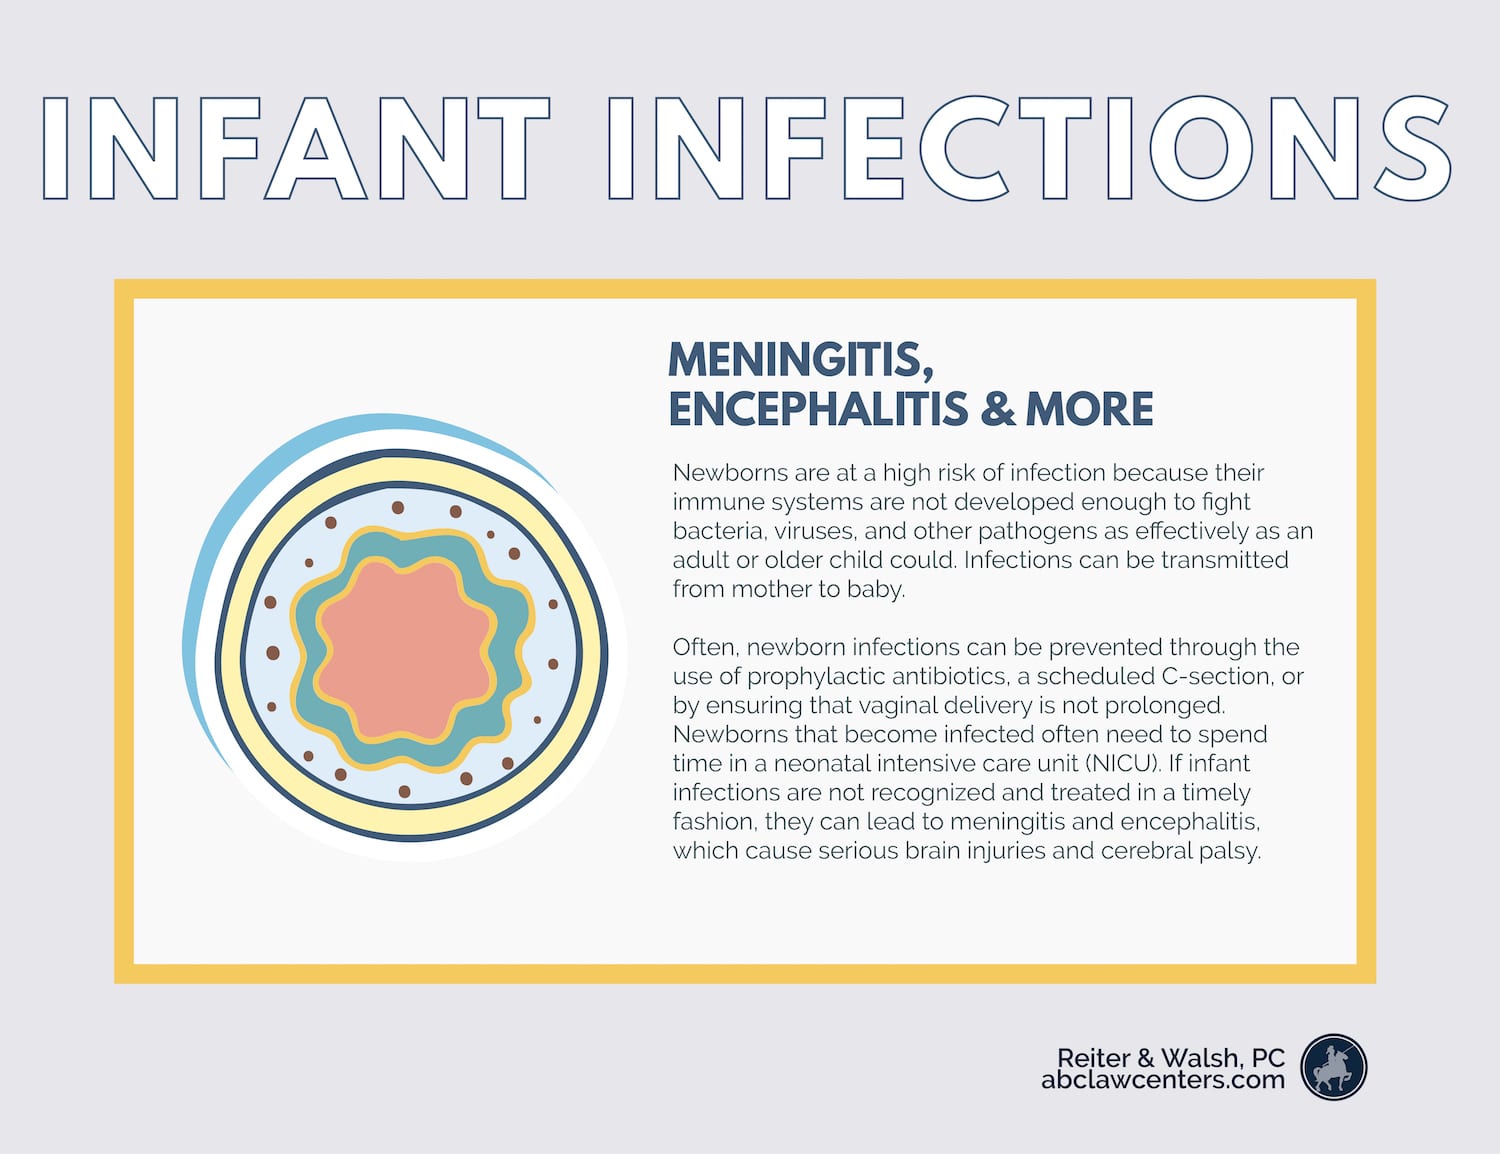 Infant Infections - Meningitis, Encephalitis